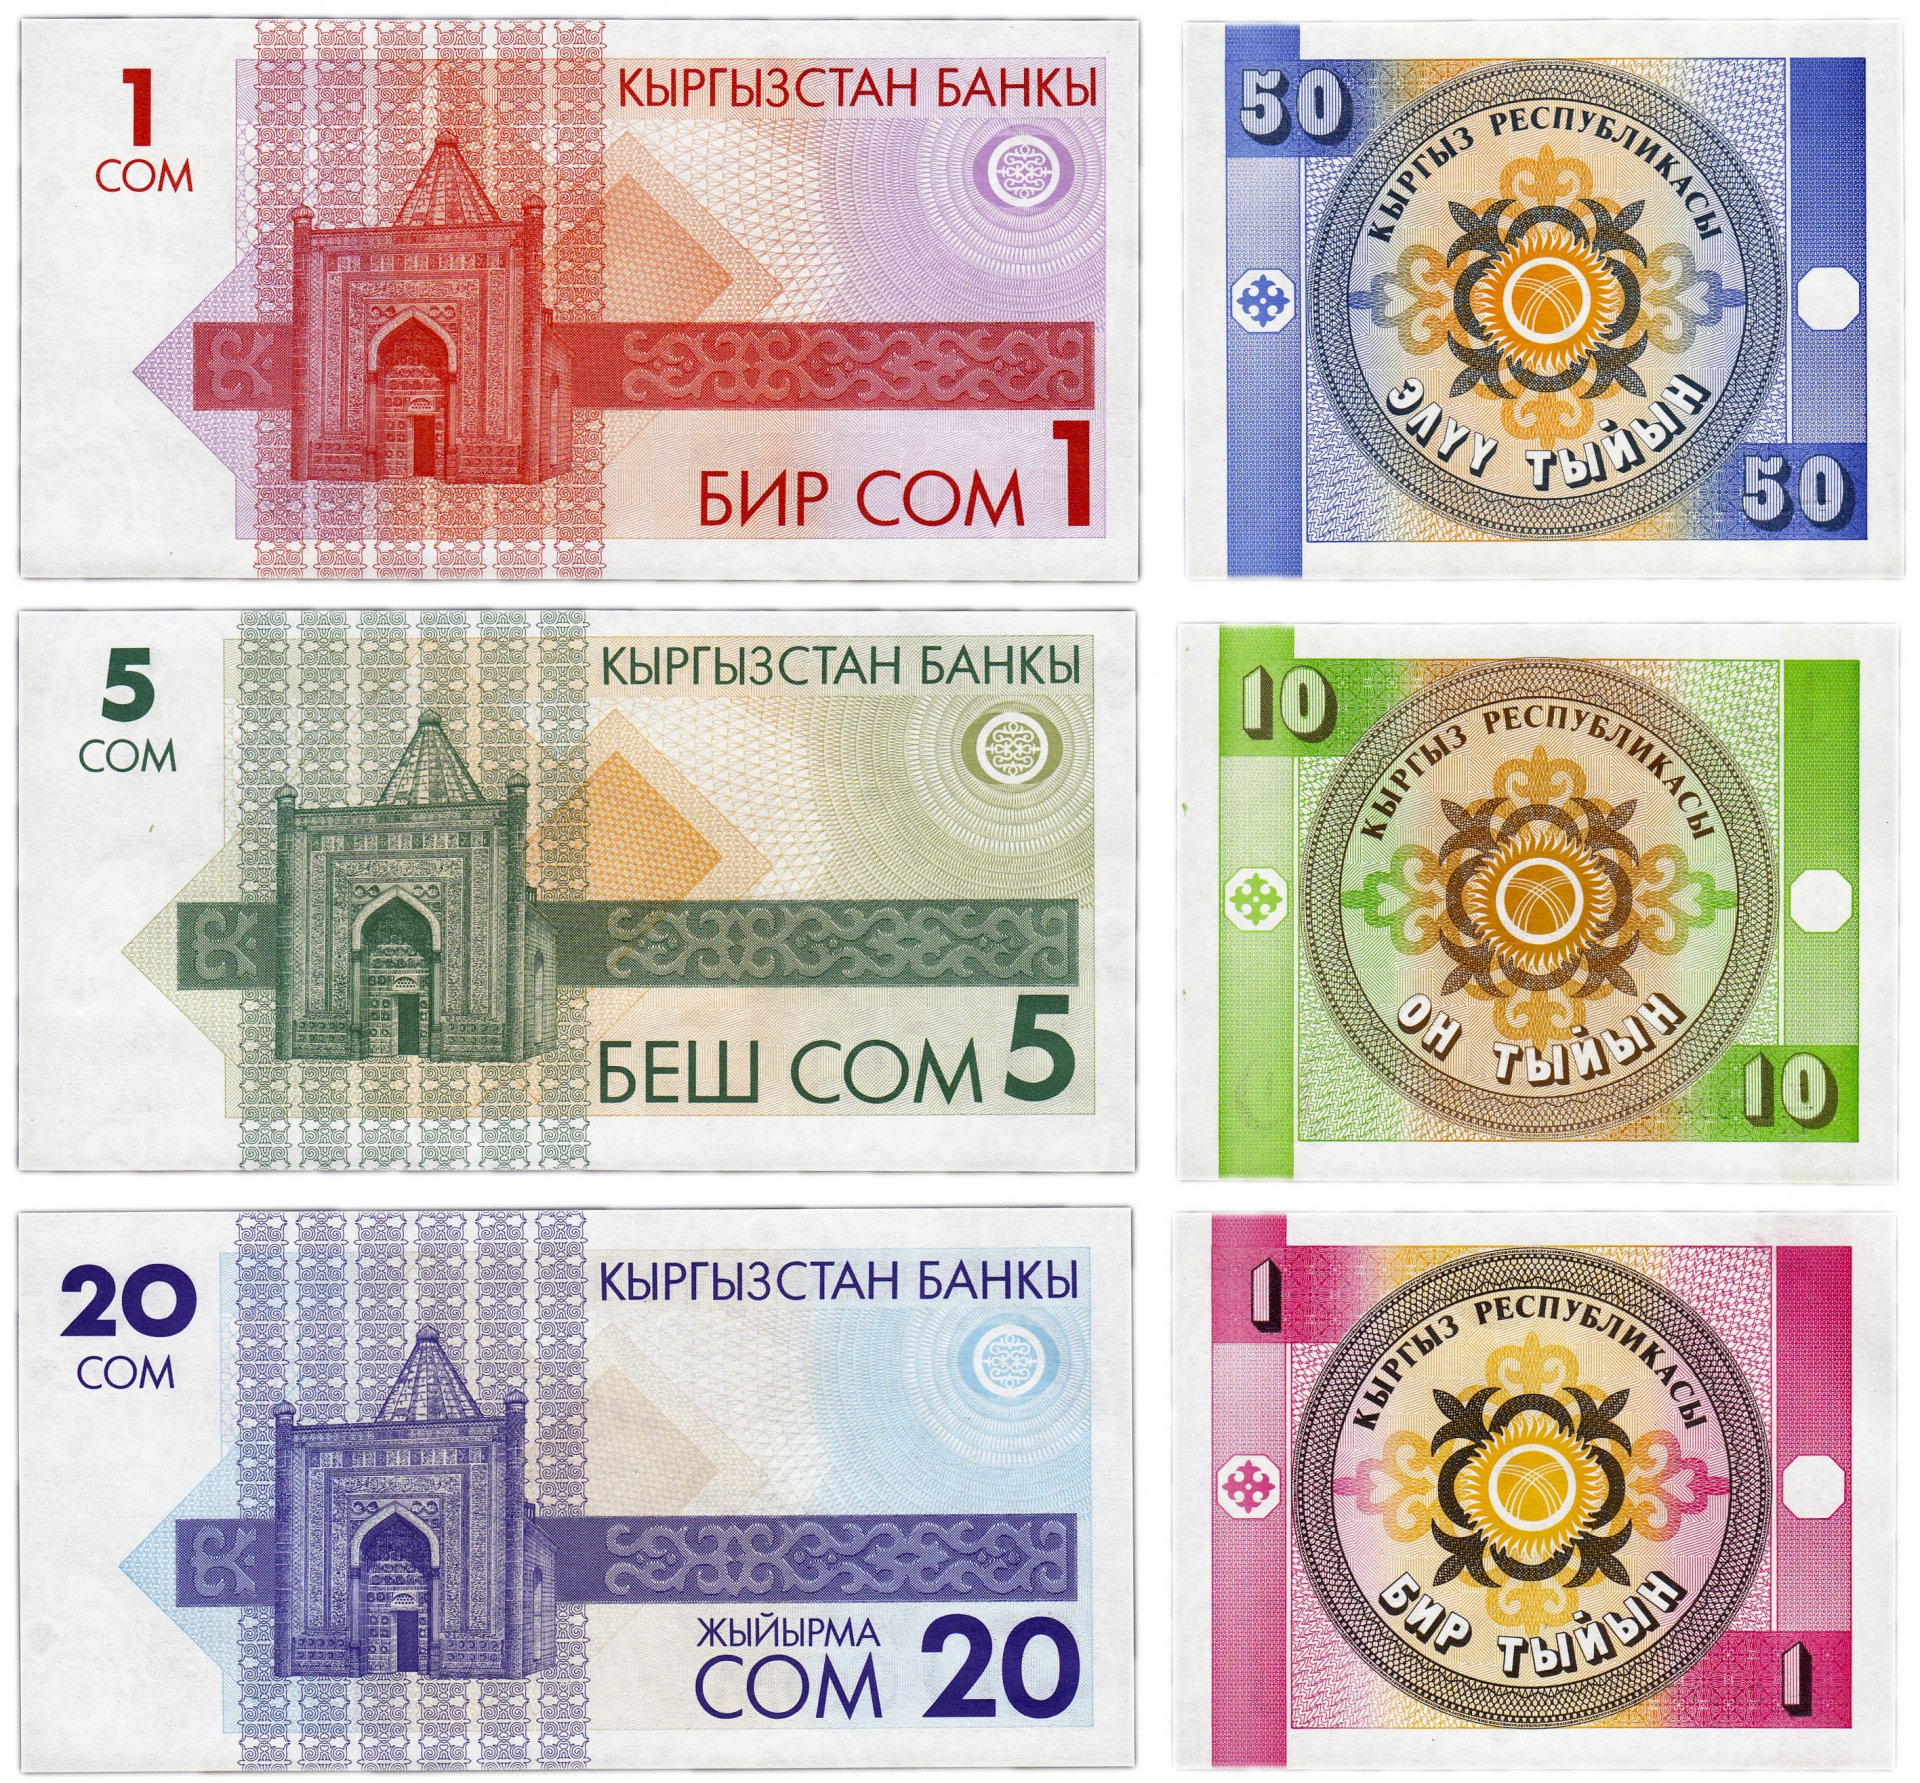 Киргизский сум. Банкноты Киргизии 1 тыйын 1993. 50 Сом 50 тыйын. Киргизские сомы банкноты 1993 года. Киргизские сомы банкноты 1993 года 50 сом.